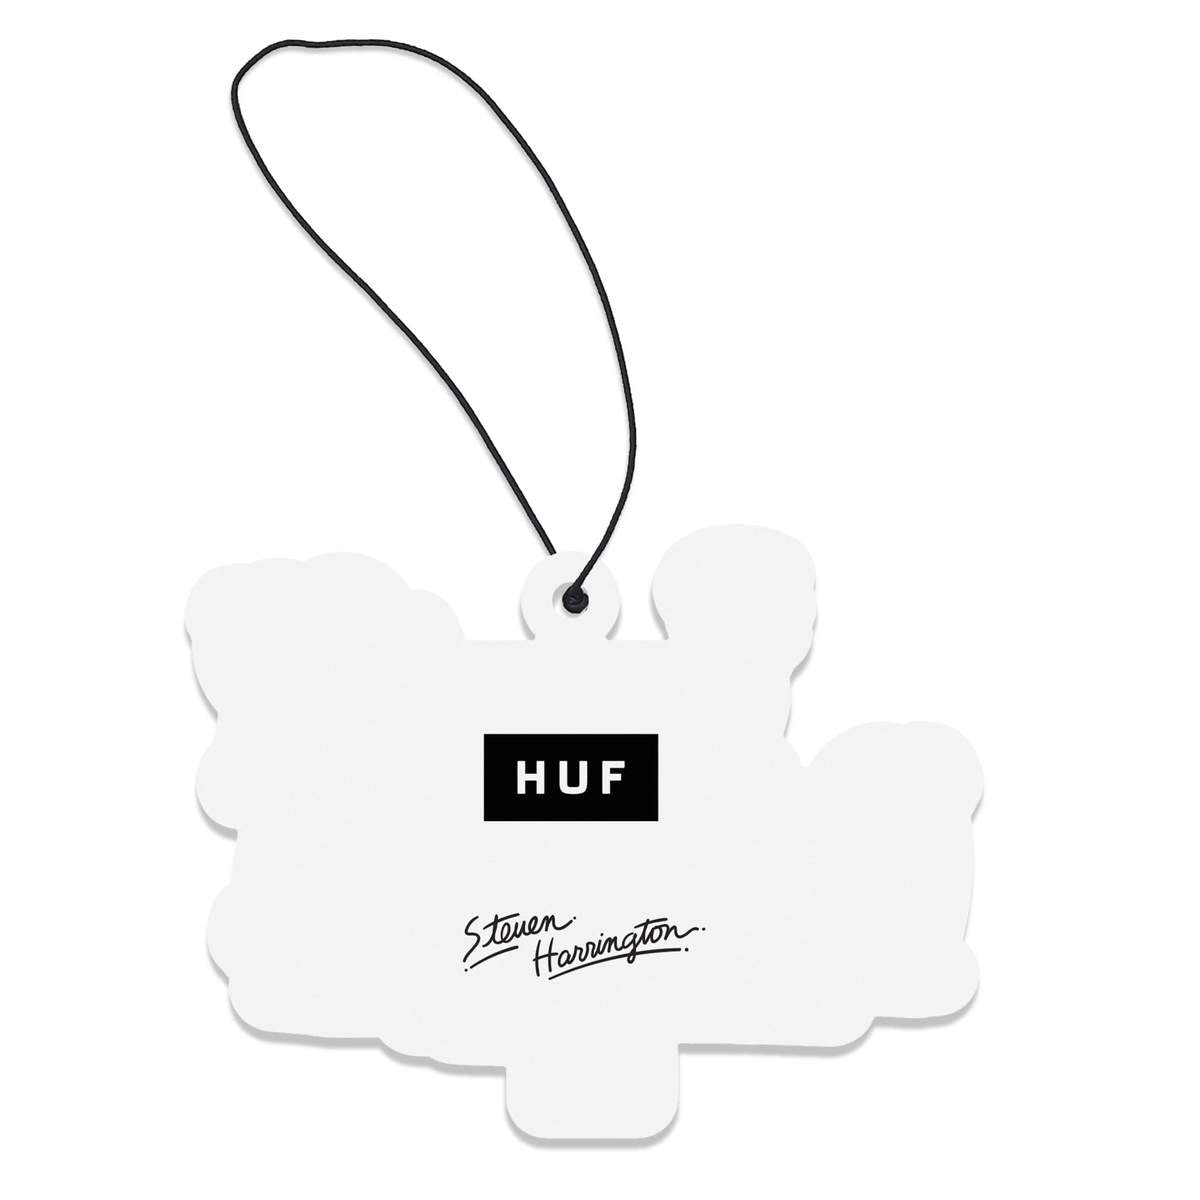 HUF x Steven Harrington - Air Freshener, Multi